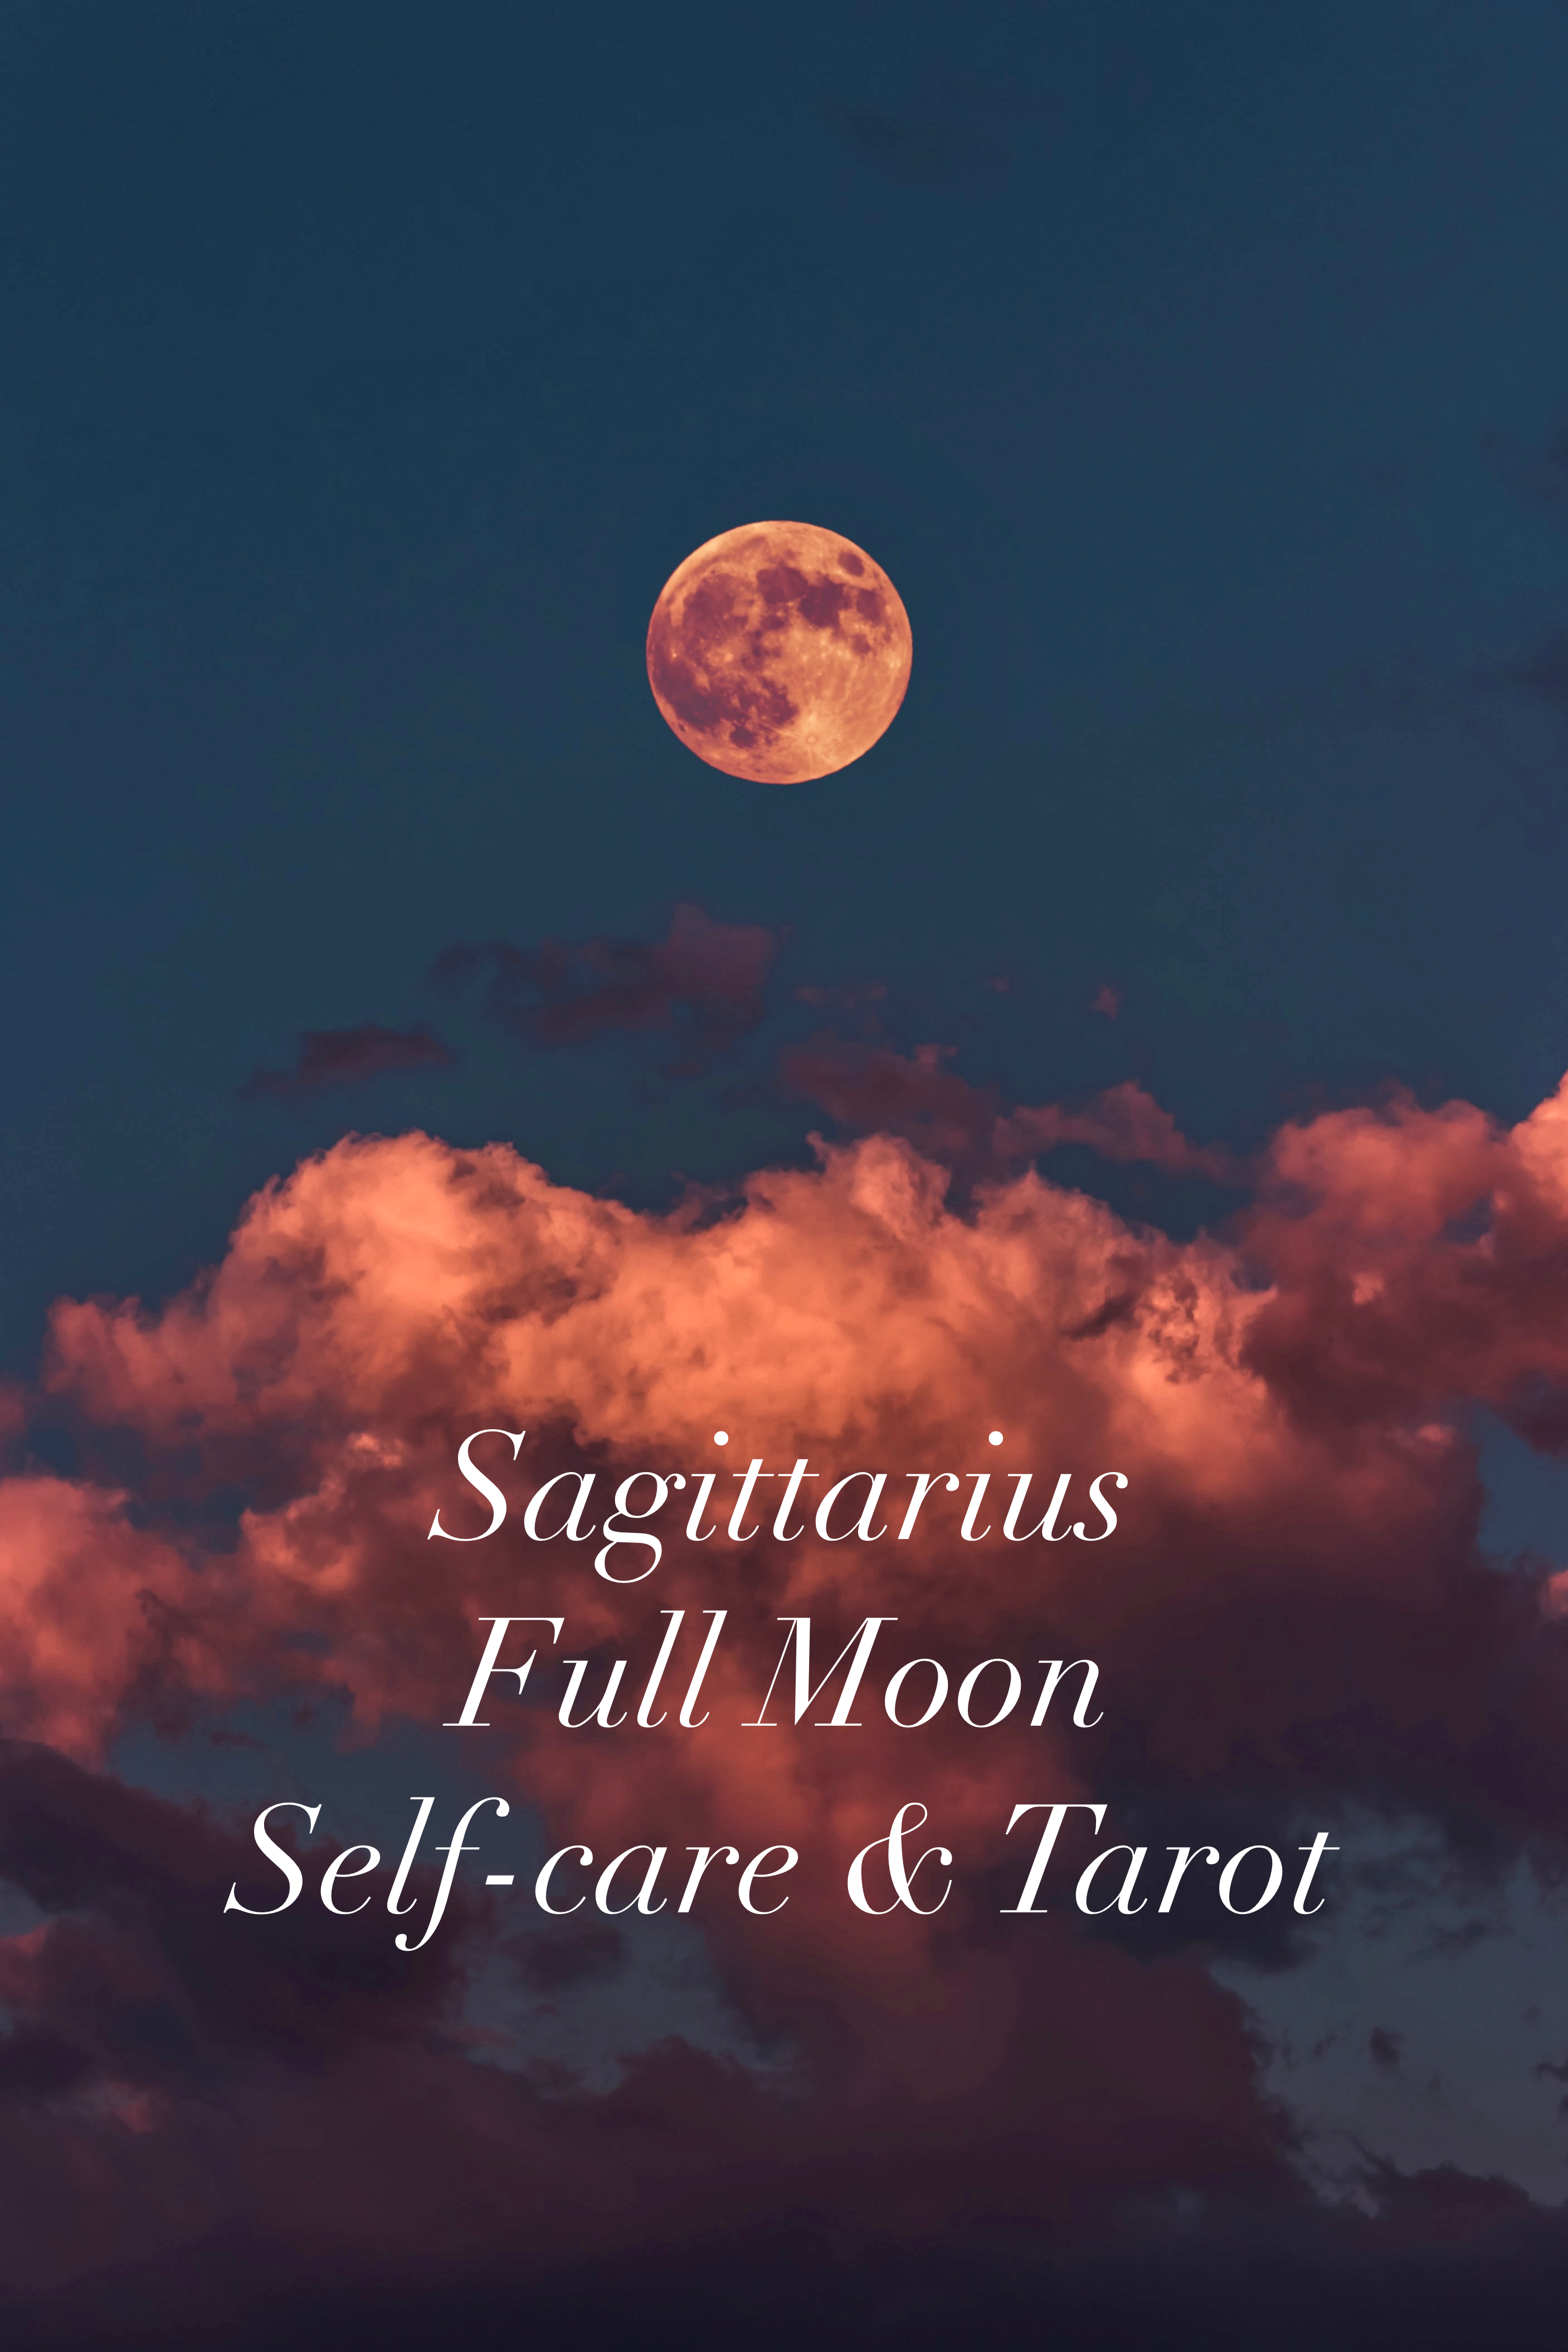 Sagittarius Full Moon 2020